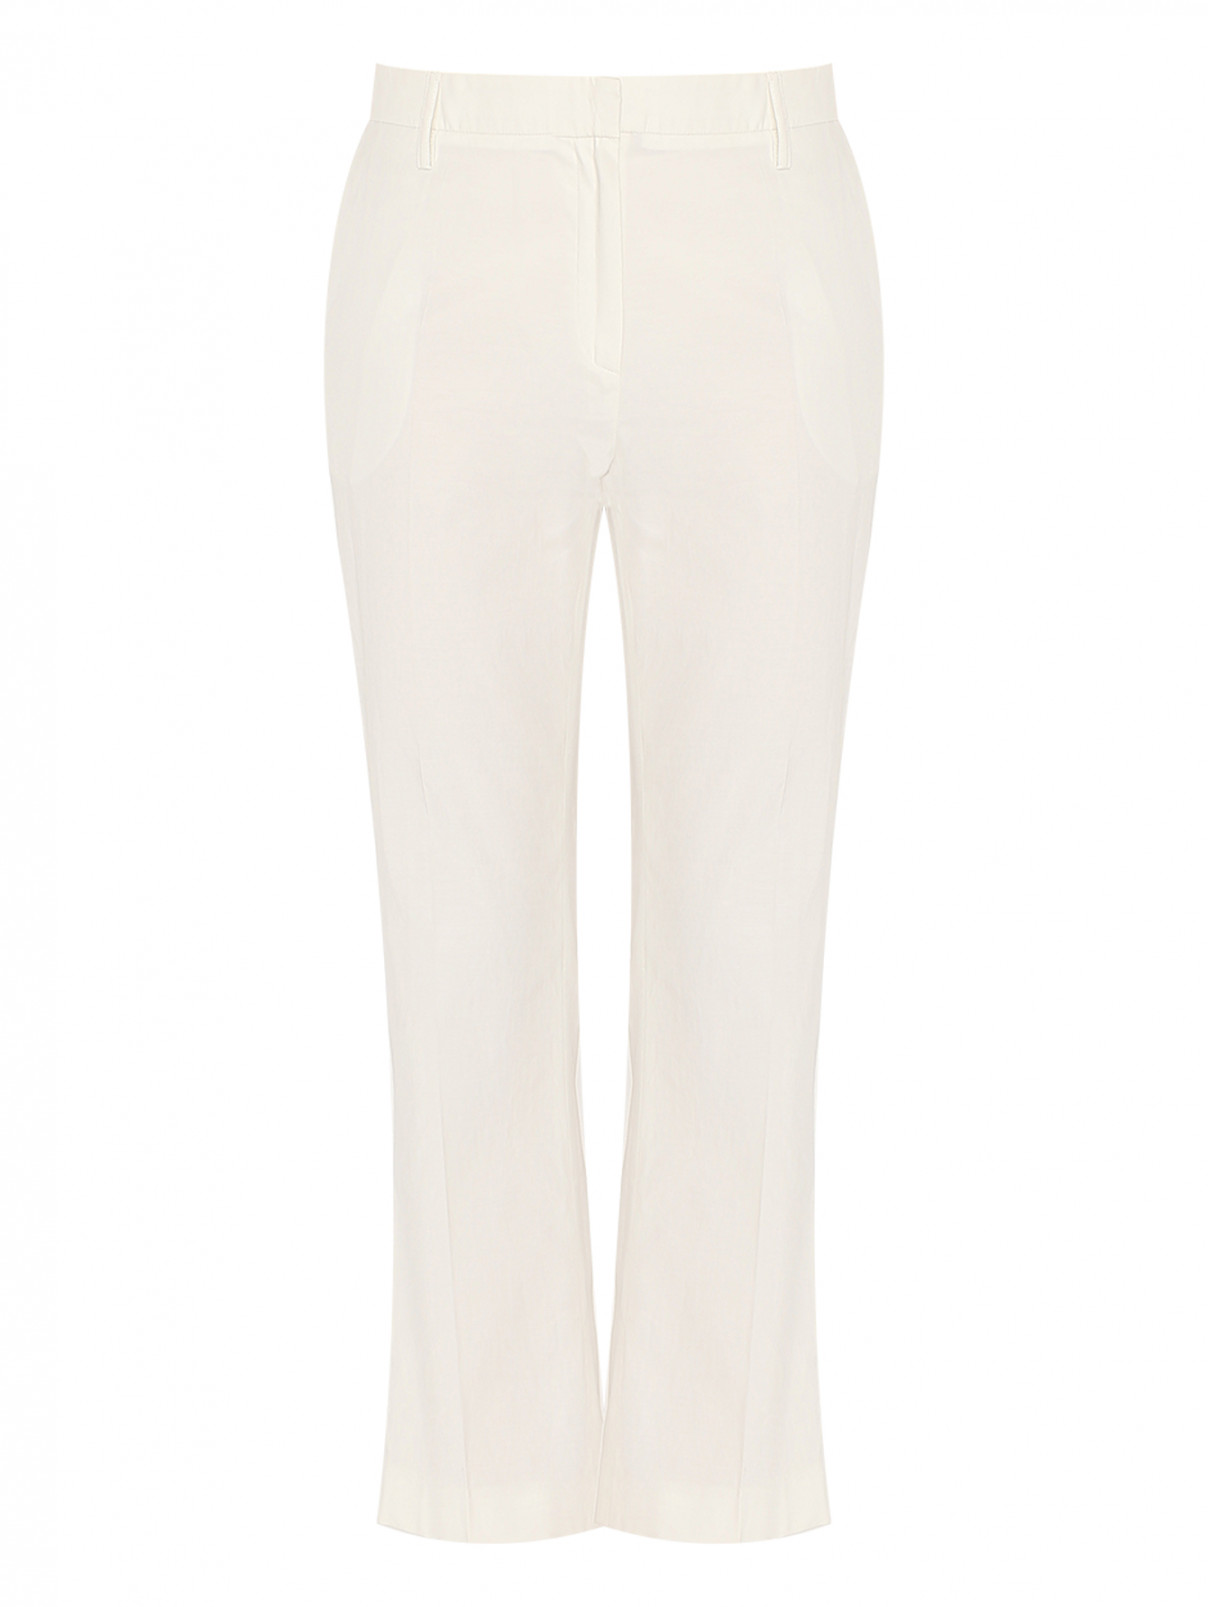 Укороченные брюки на молнии Sonia Rykiel  –  Общий вид  – Цвет:  Белый